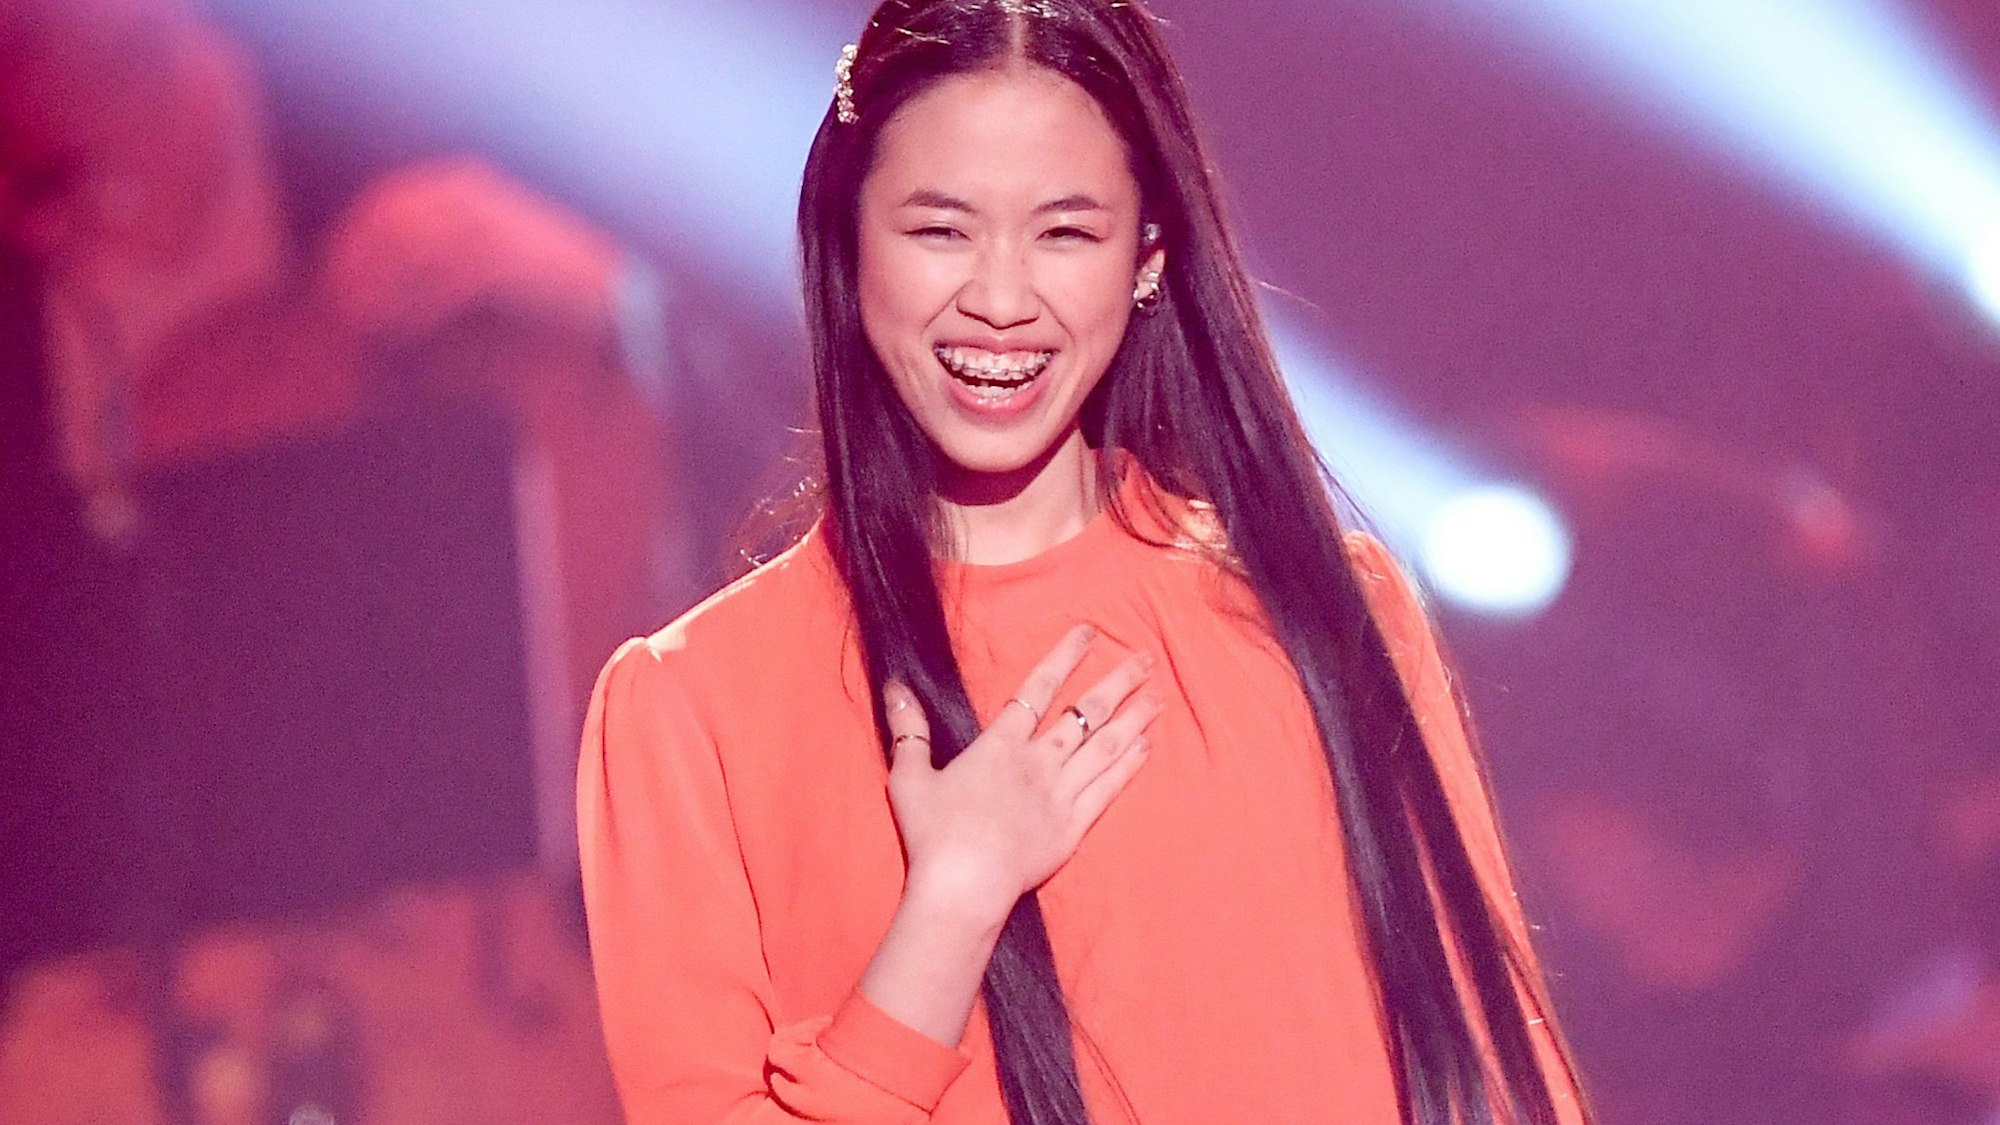 Claudia Emmanuela Santoso, Sängerin und Finalistin der Castingshow „The Voice of Germany“, steht beim Finale auf der Bühne und lächelt.